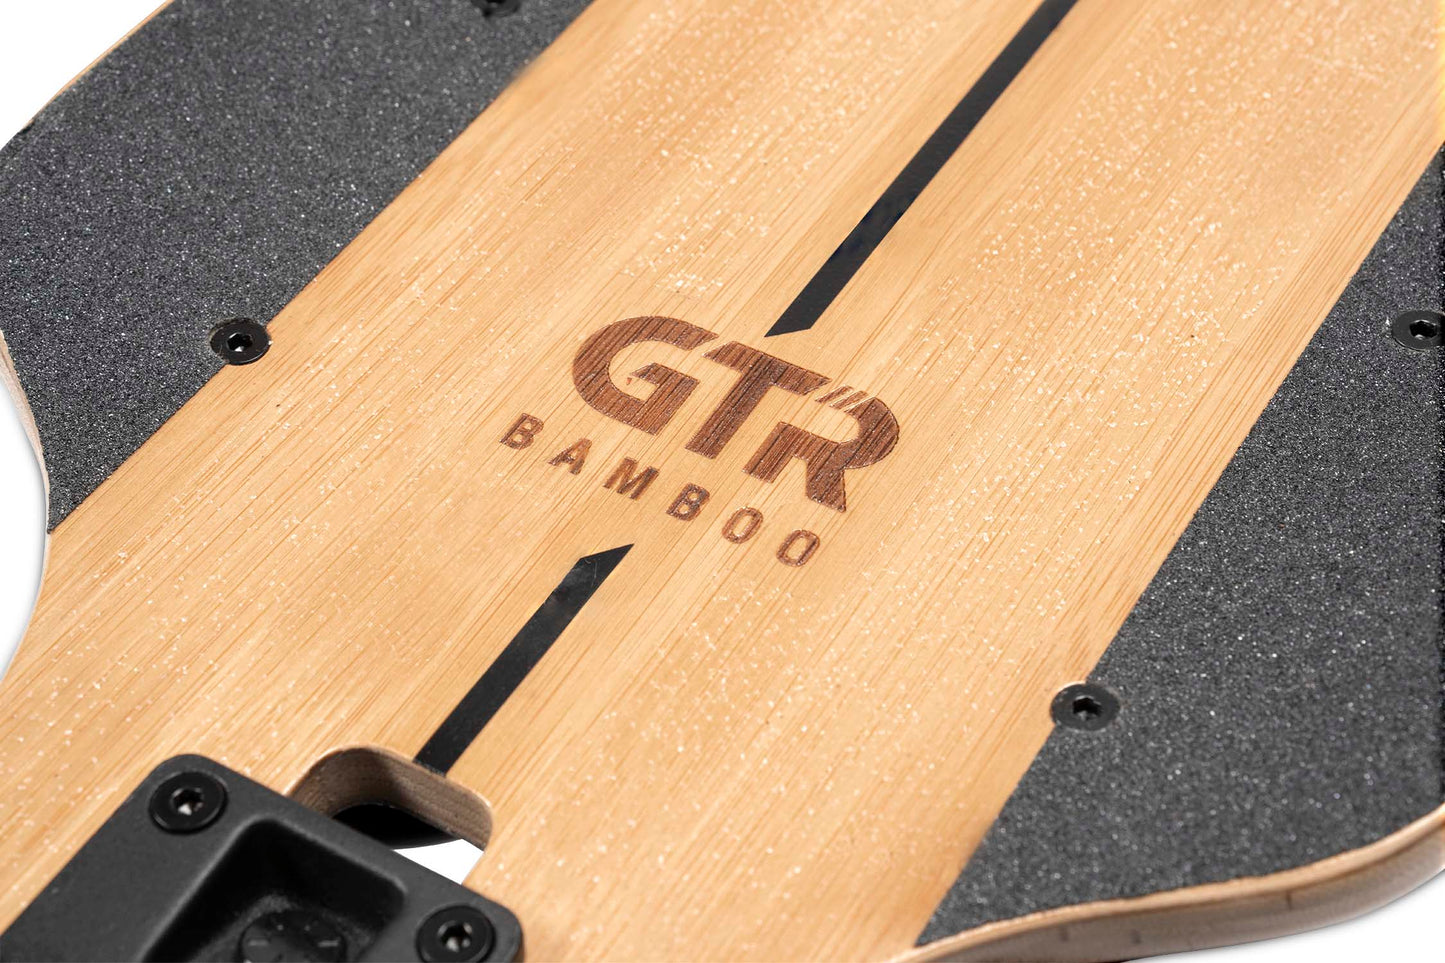 Skate Eléctrico - Bamboo GTR Serie 2 con ruedas de skateboard